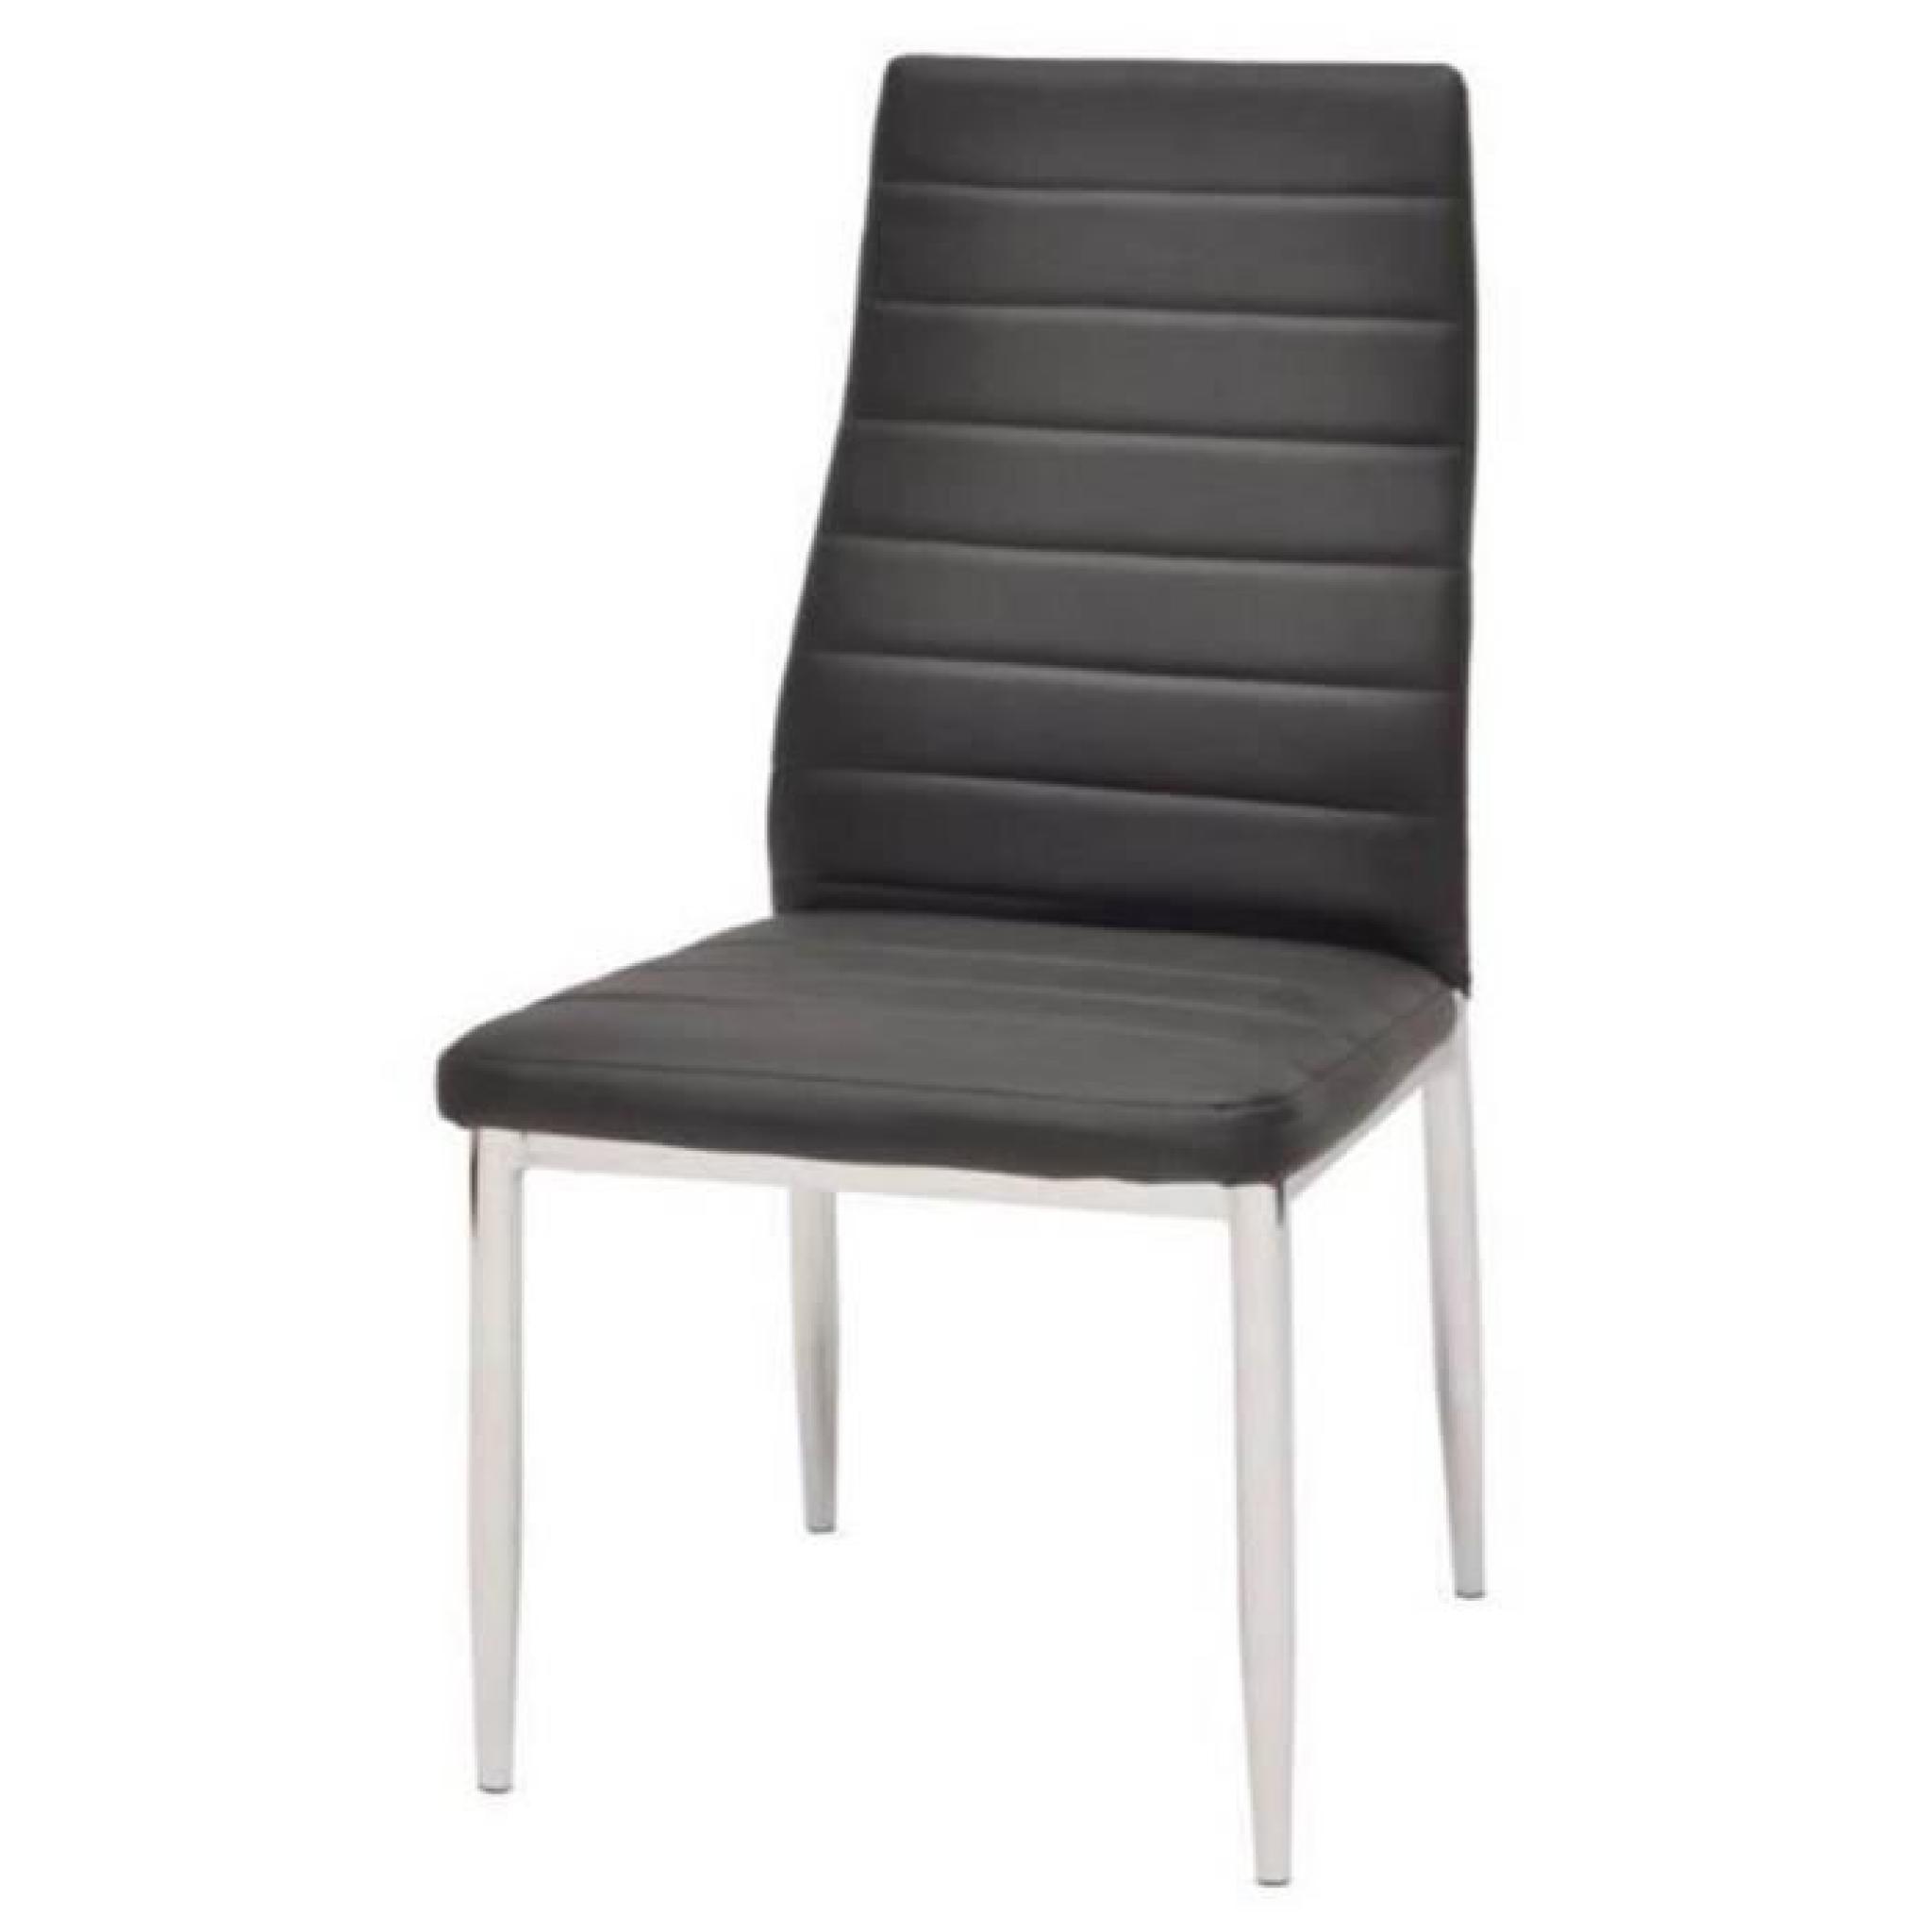 Chaise piètement en métal et assise en simili noir, 40 x 51 x 96 cm